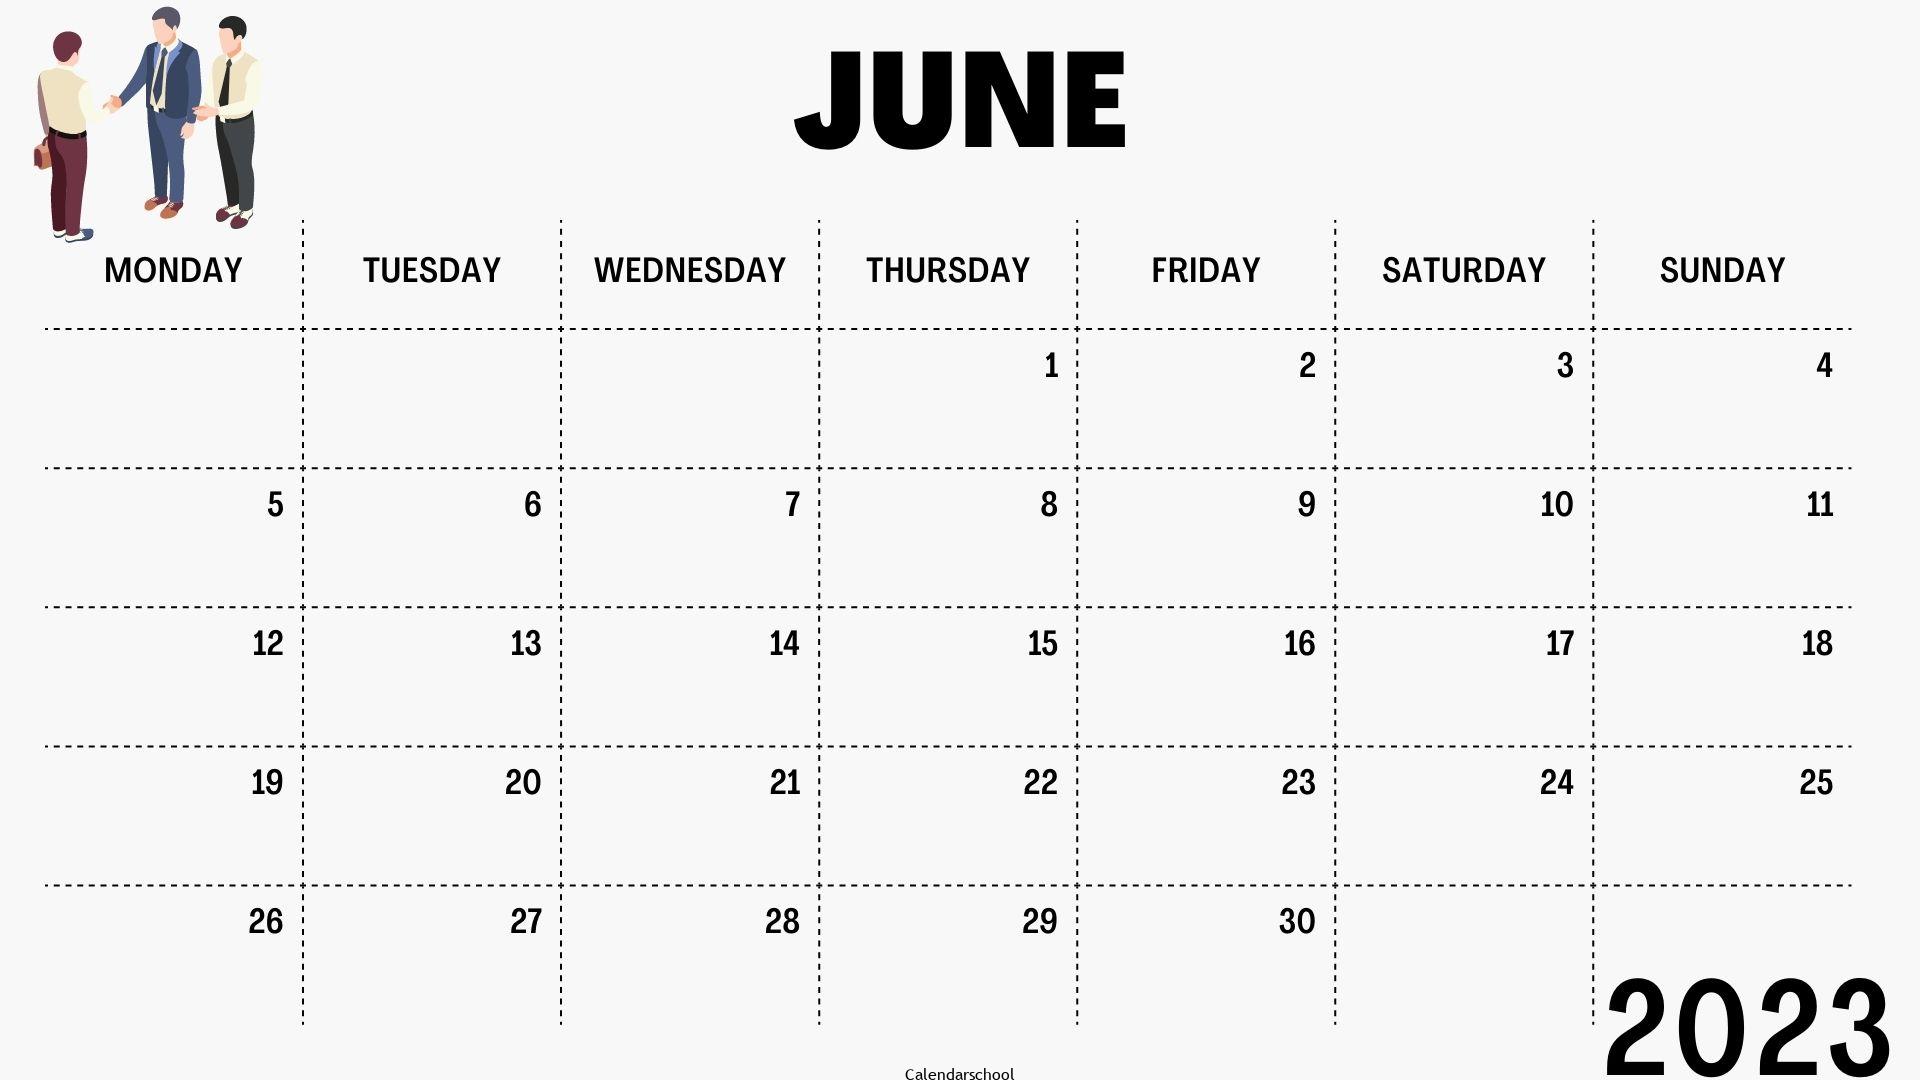 June Free Printable Calendar 2023